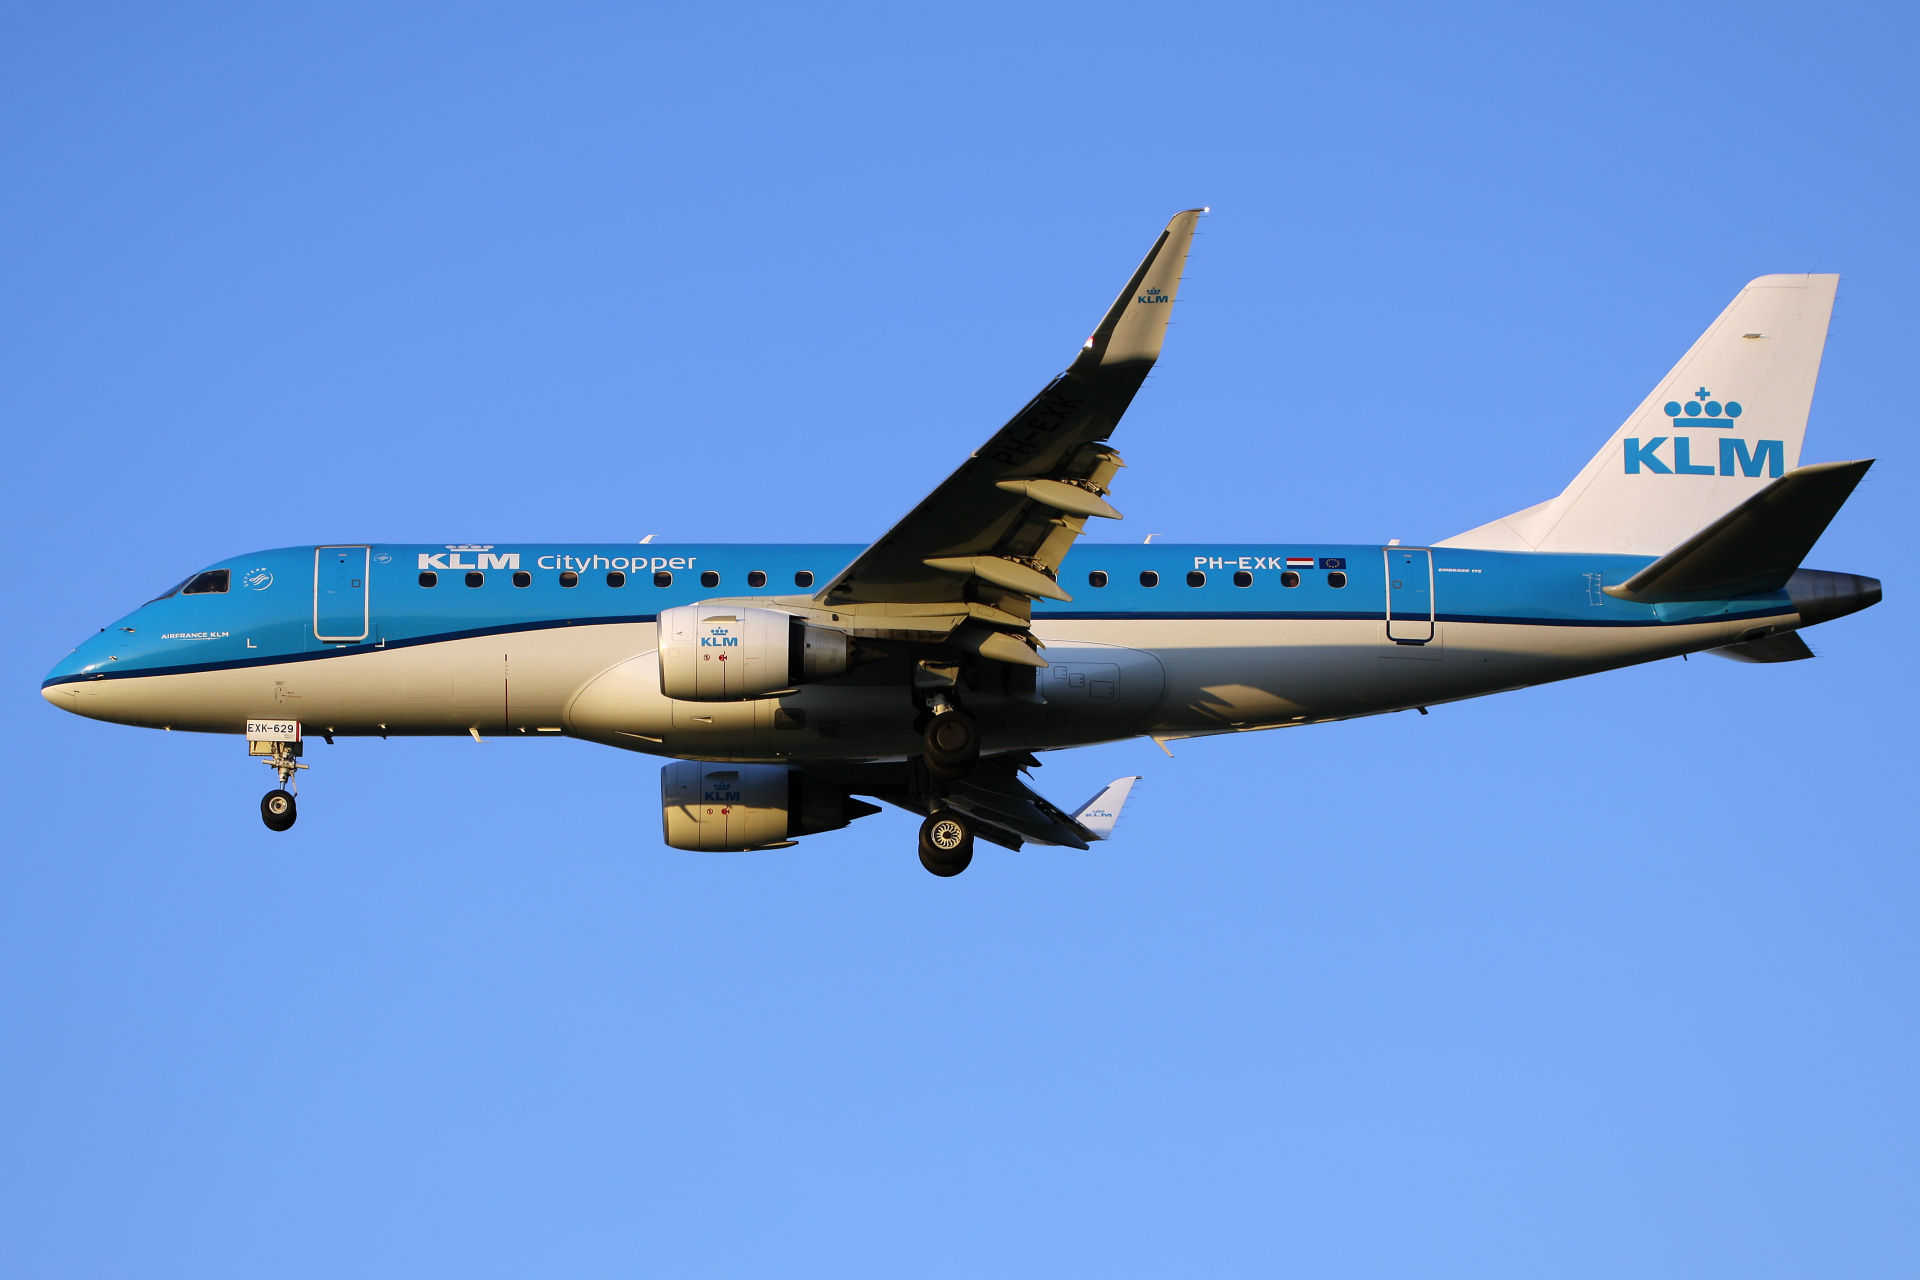 PH-EXK, KLM Cityhopper (Aircraft » EPWA Spotting » Embraer E175)